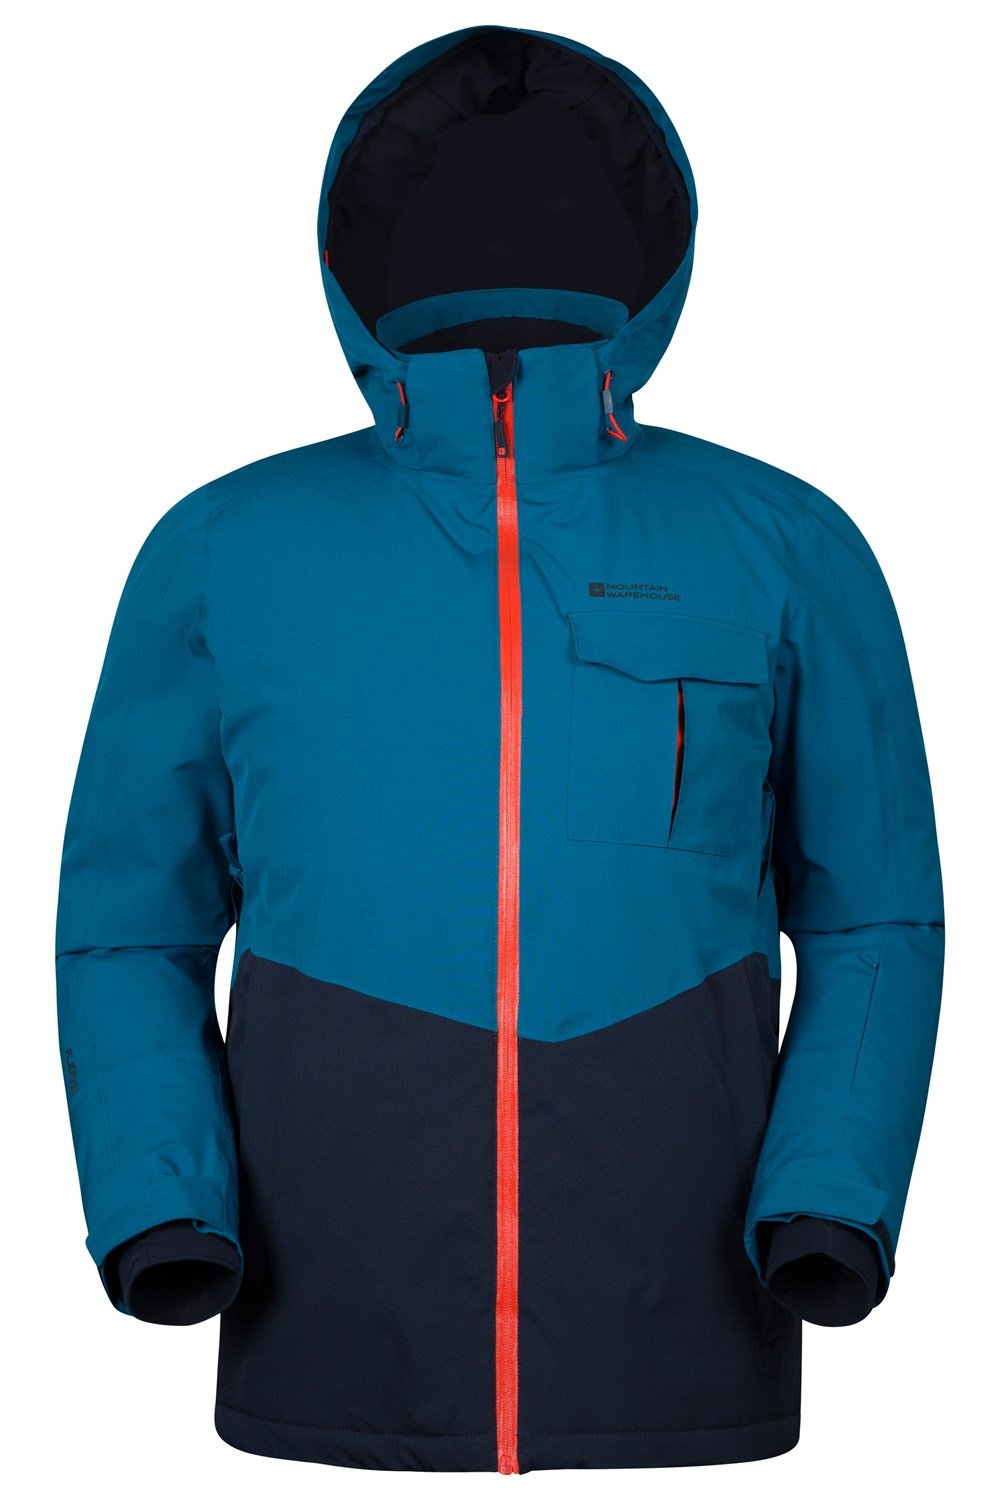 Mountain Warehouse Atmosphere Extreme Mens Ski Jacket | eBay